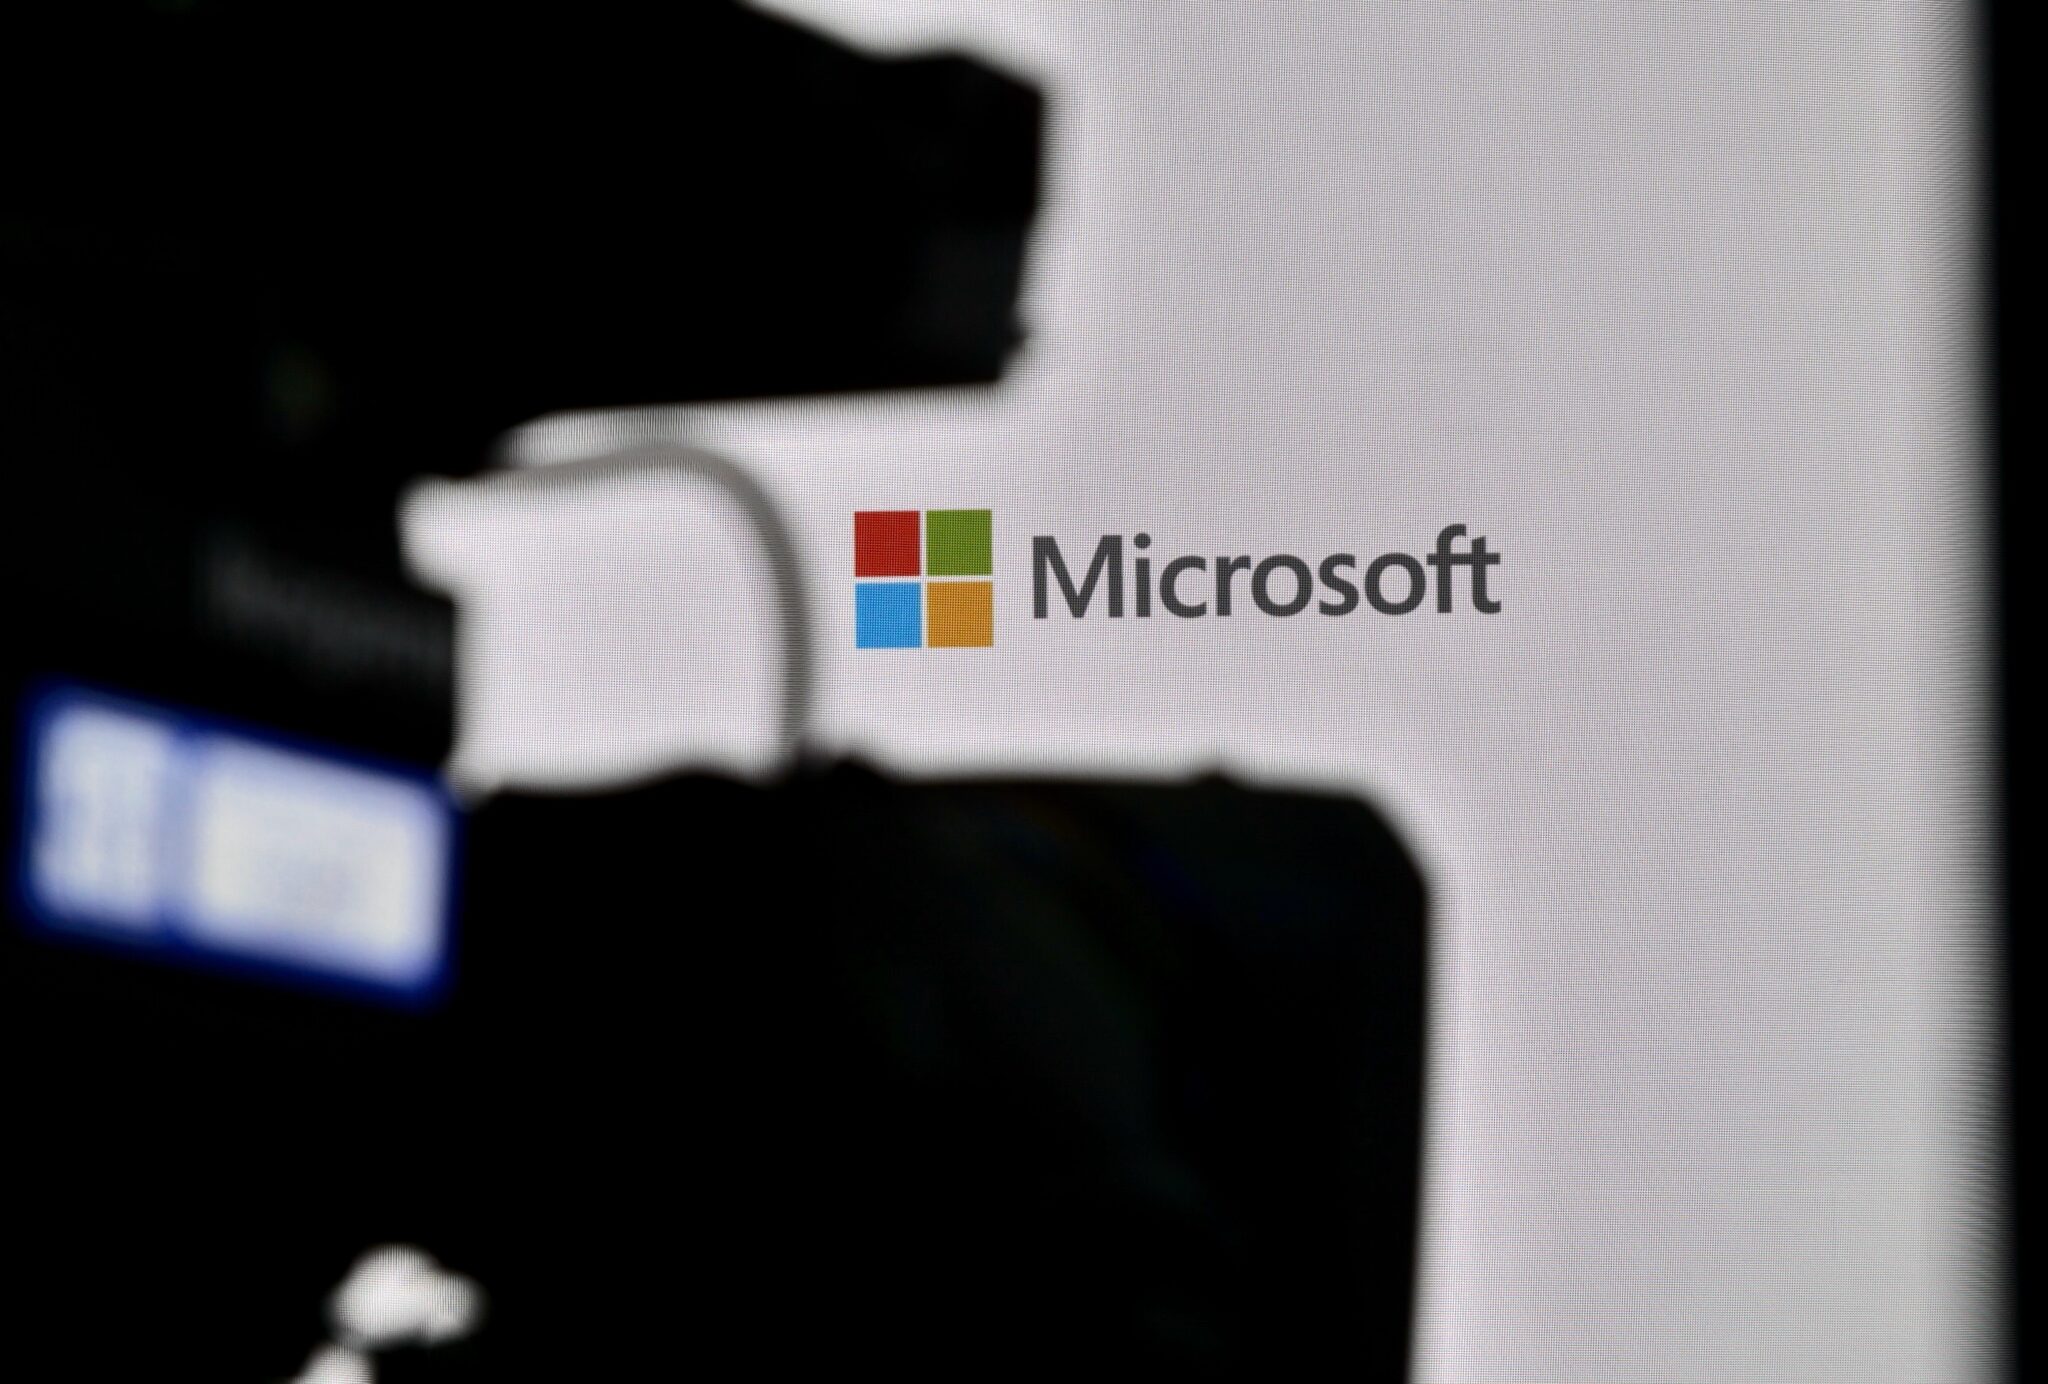 Microsoft hat versucht, die Sicherheitslücke in DALL-E zu vertuschen, so ein Mitarbeiter des Unternehmens